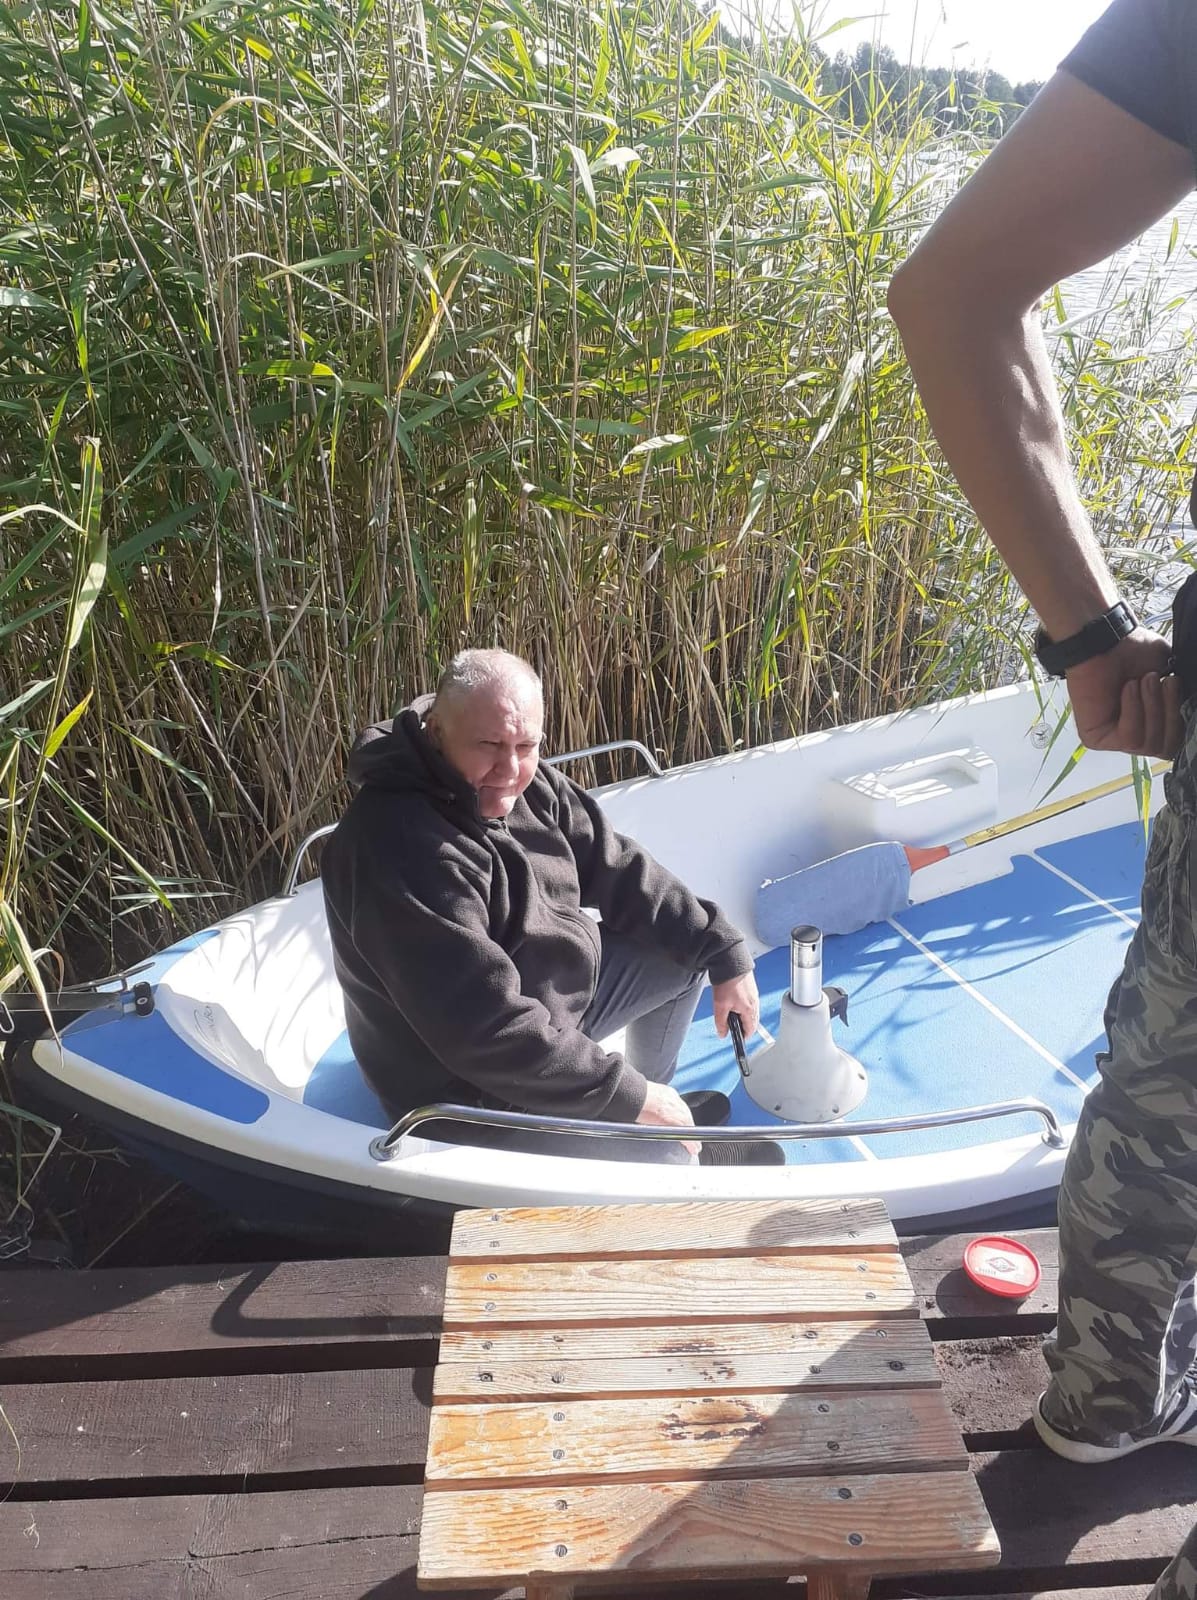 Mężczyzna siedzący w łódce w trzcinach przy pomoście. Nad nim widać postać mężczyzny w spodniach moro.